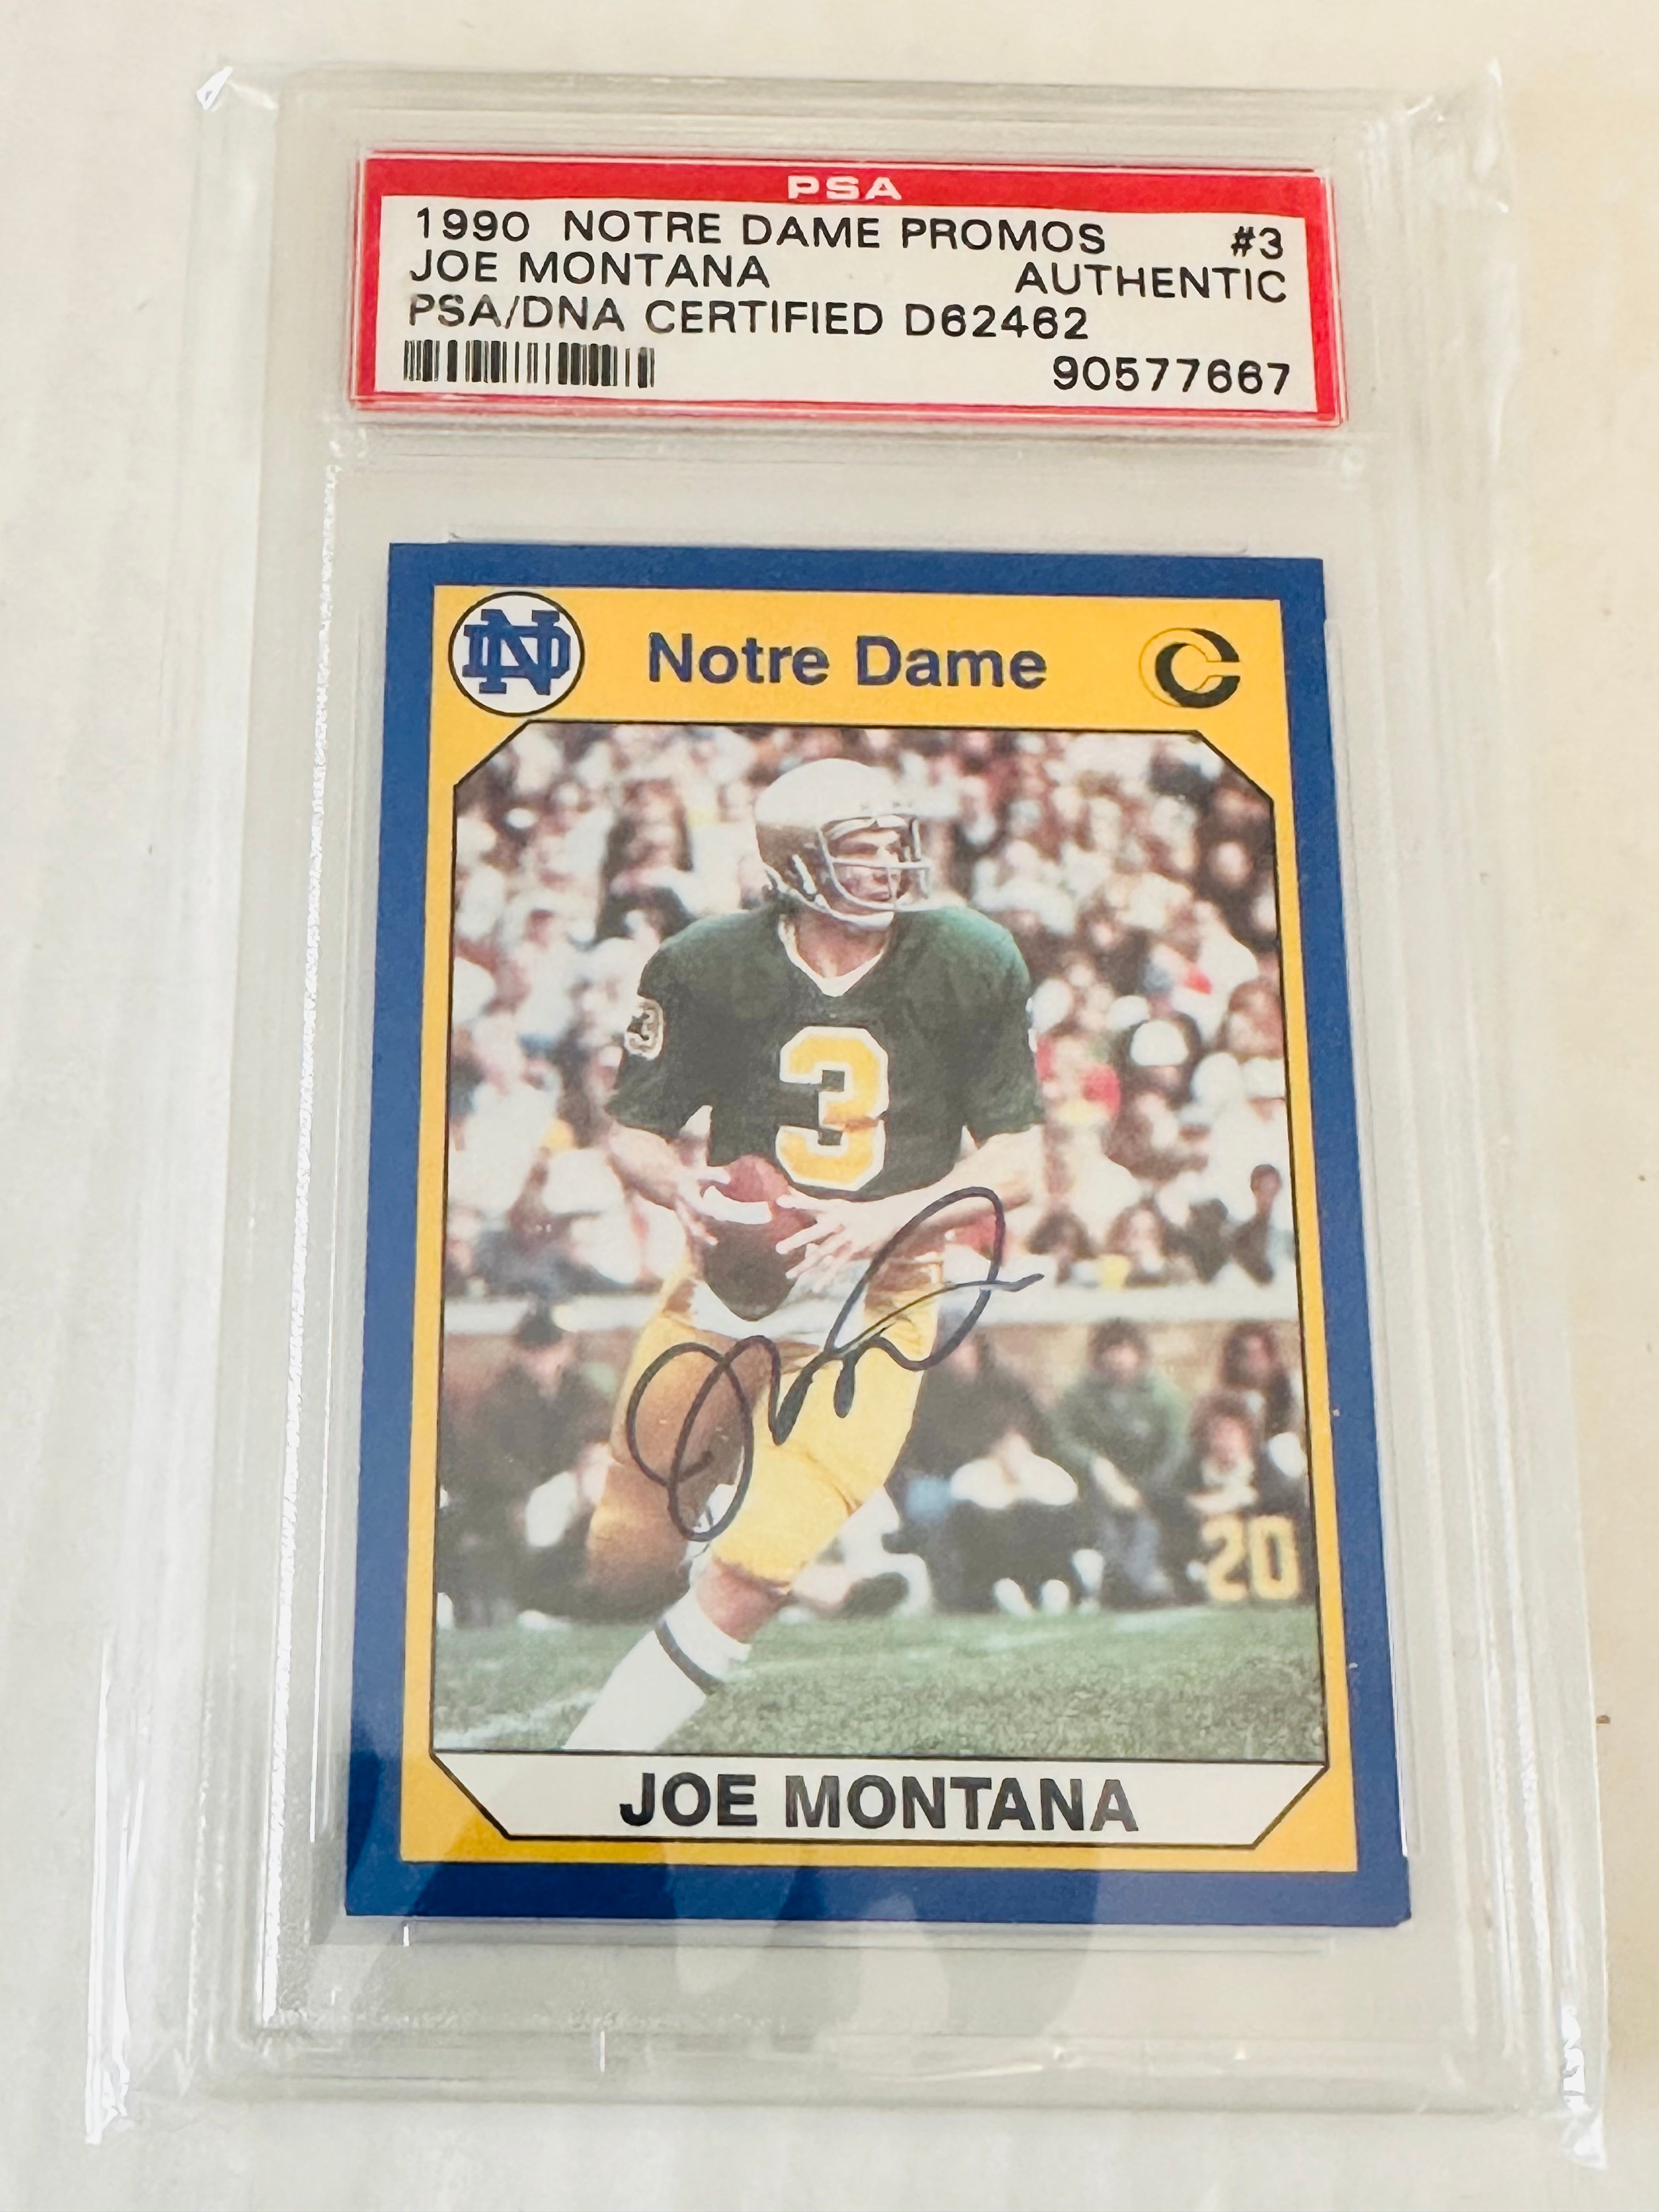 Joe Montana rare autograph card PSA/DNA certified